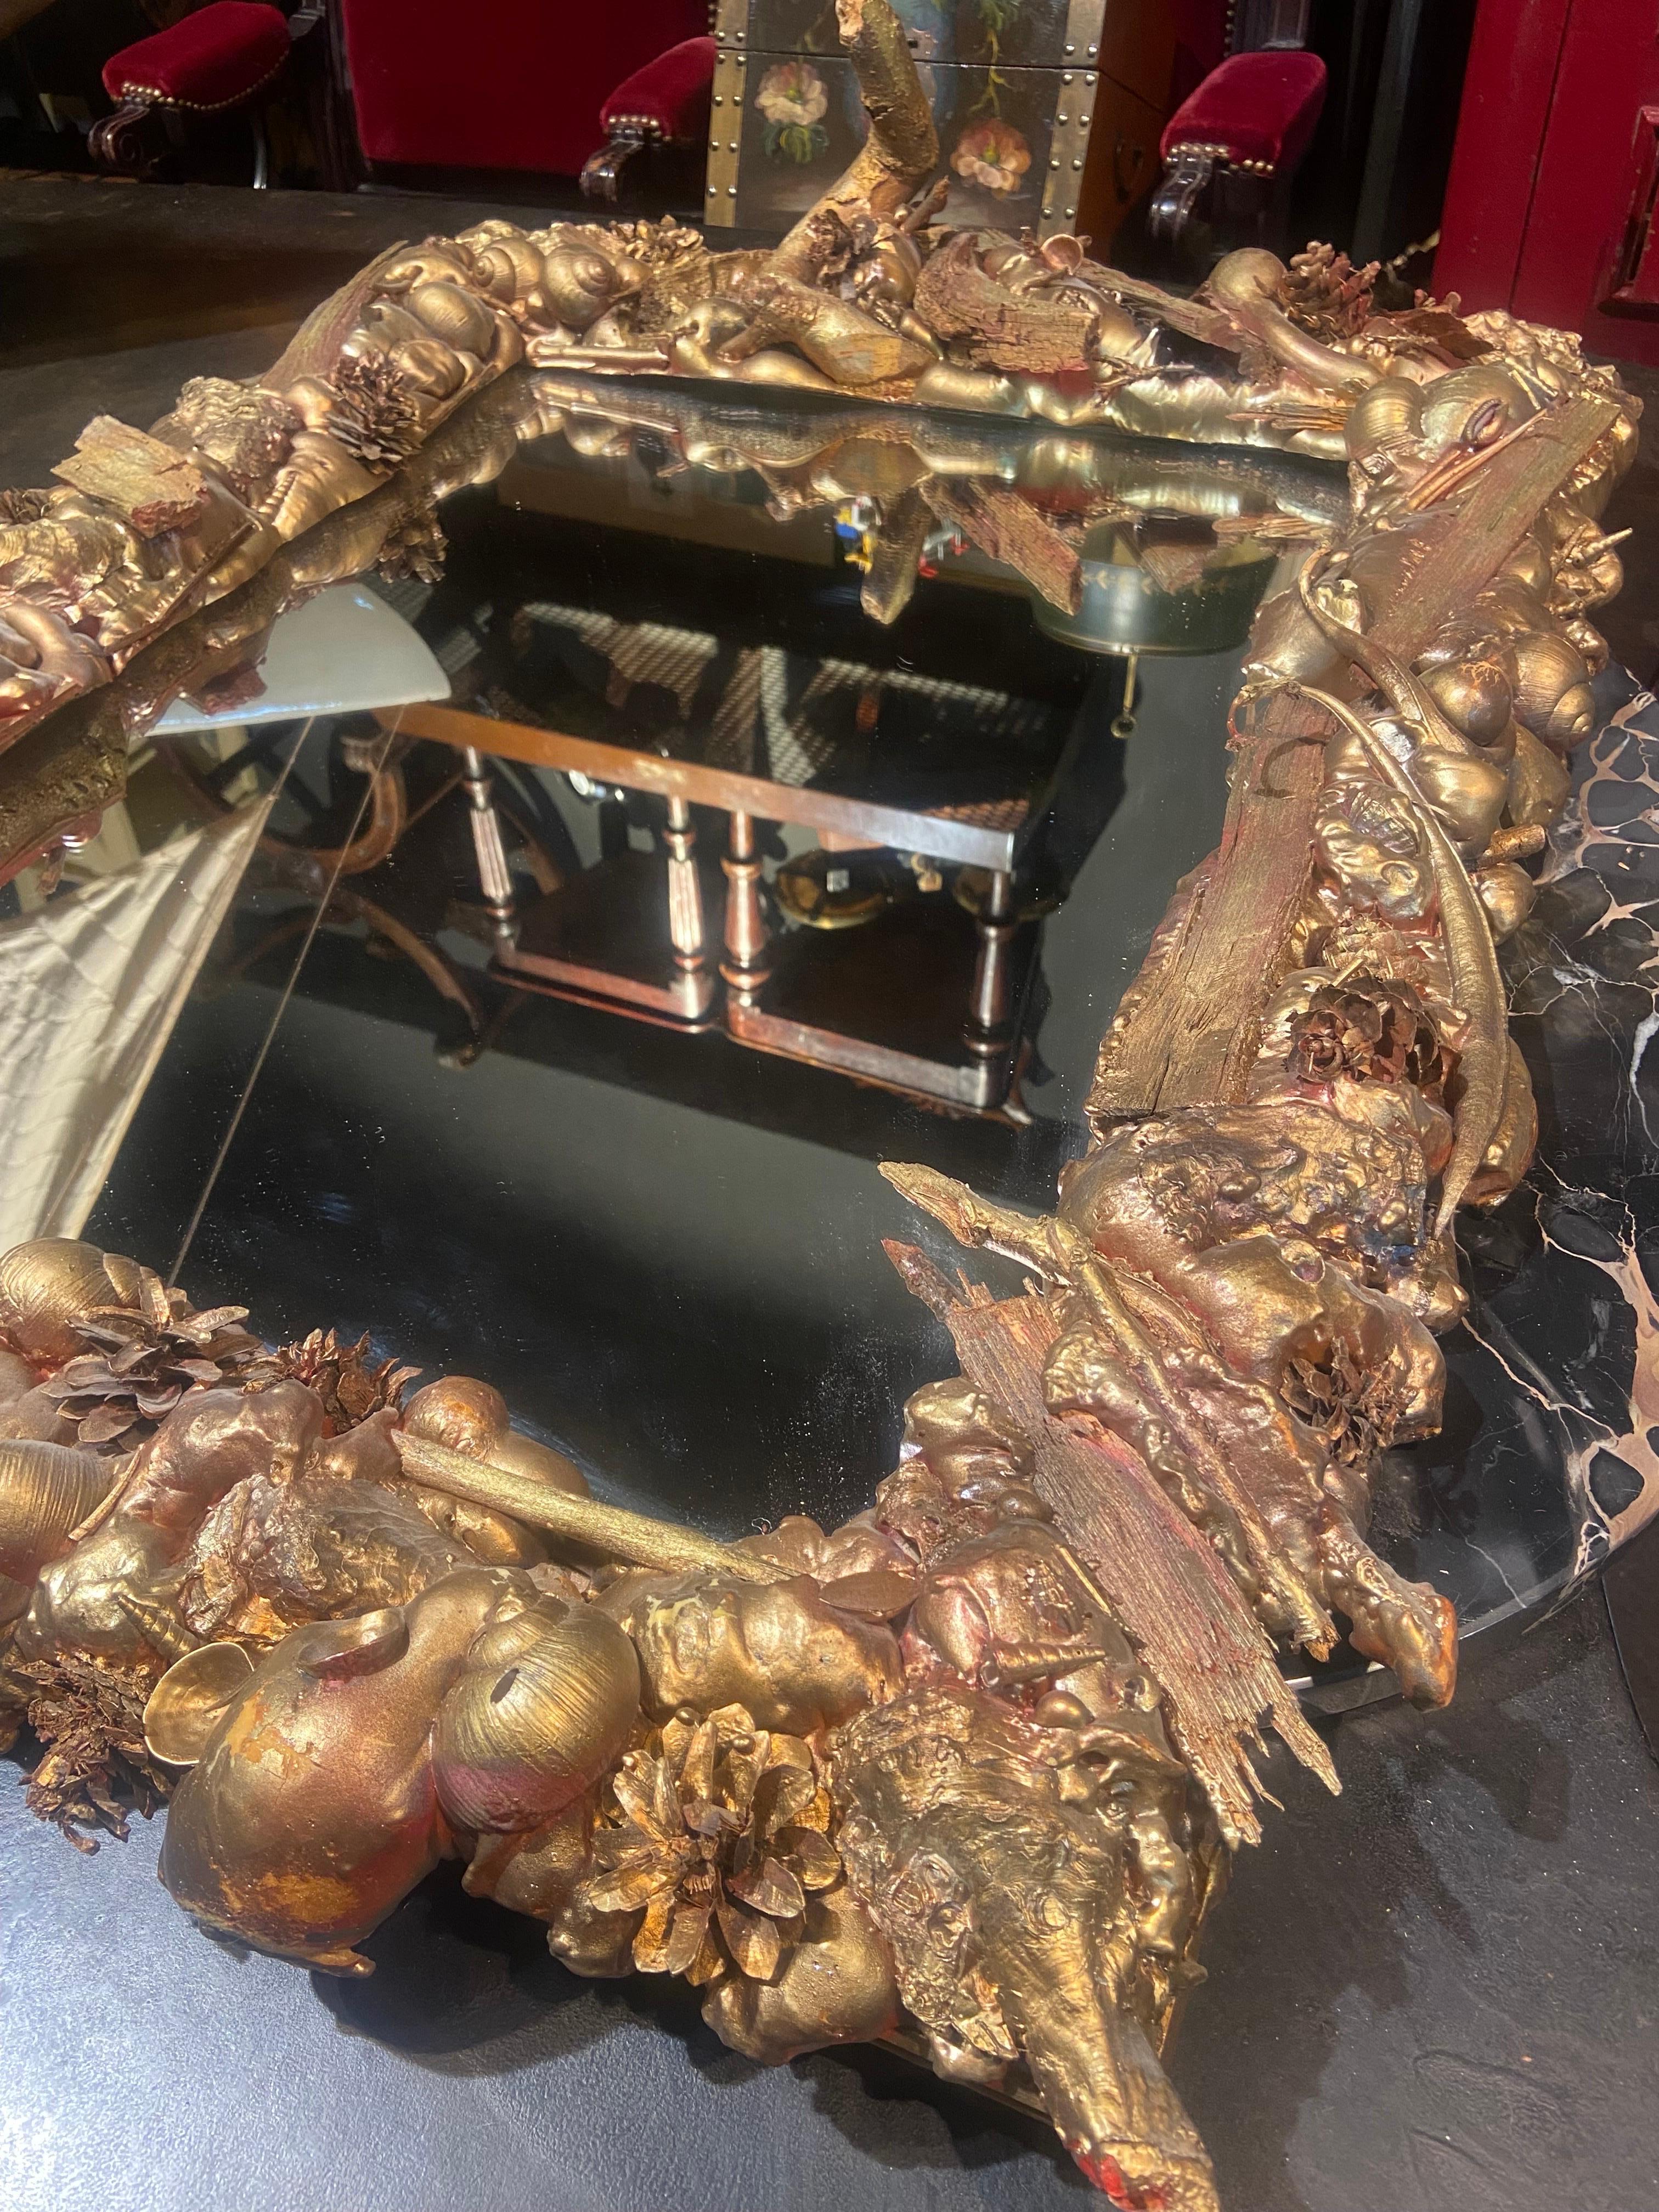 Einzigartiger großer Spiegel aus natürlichen MATERIALEN, die in den Wäldern und im Meer gesammelt und in Bronze lackiert wurden. Ein sehr zartes und schönes Kunstwerk.
Frankreich, um 1970